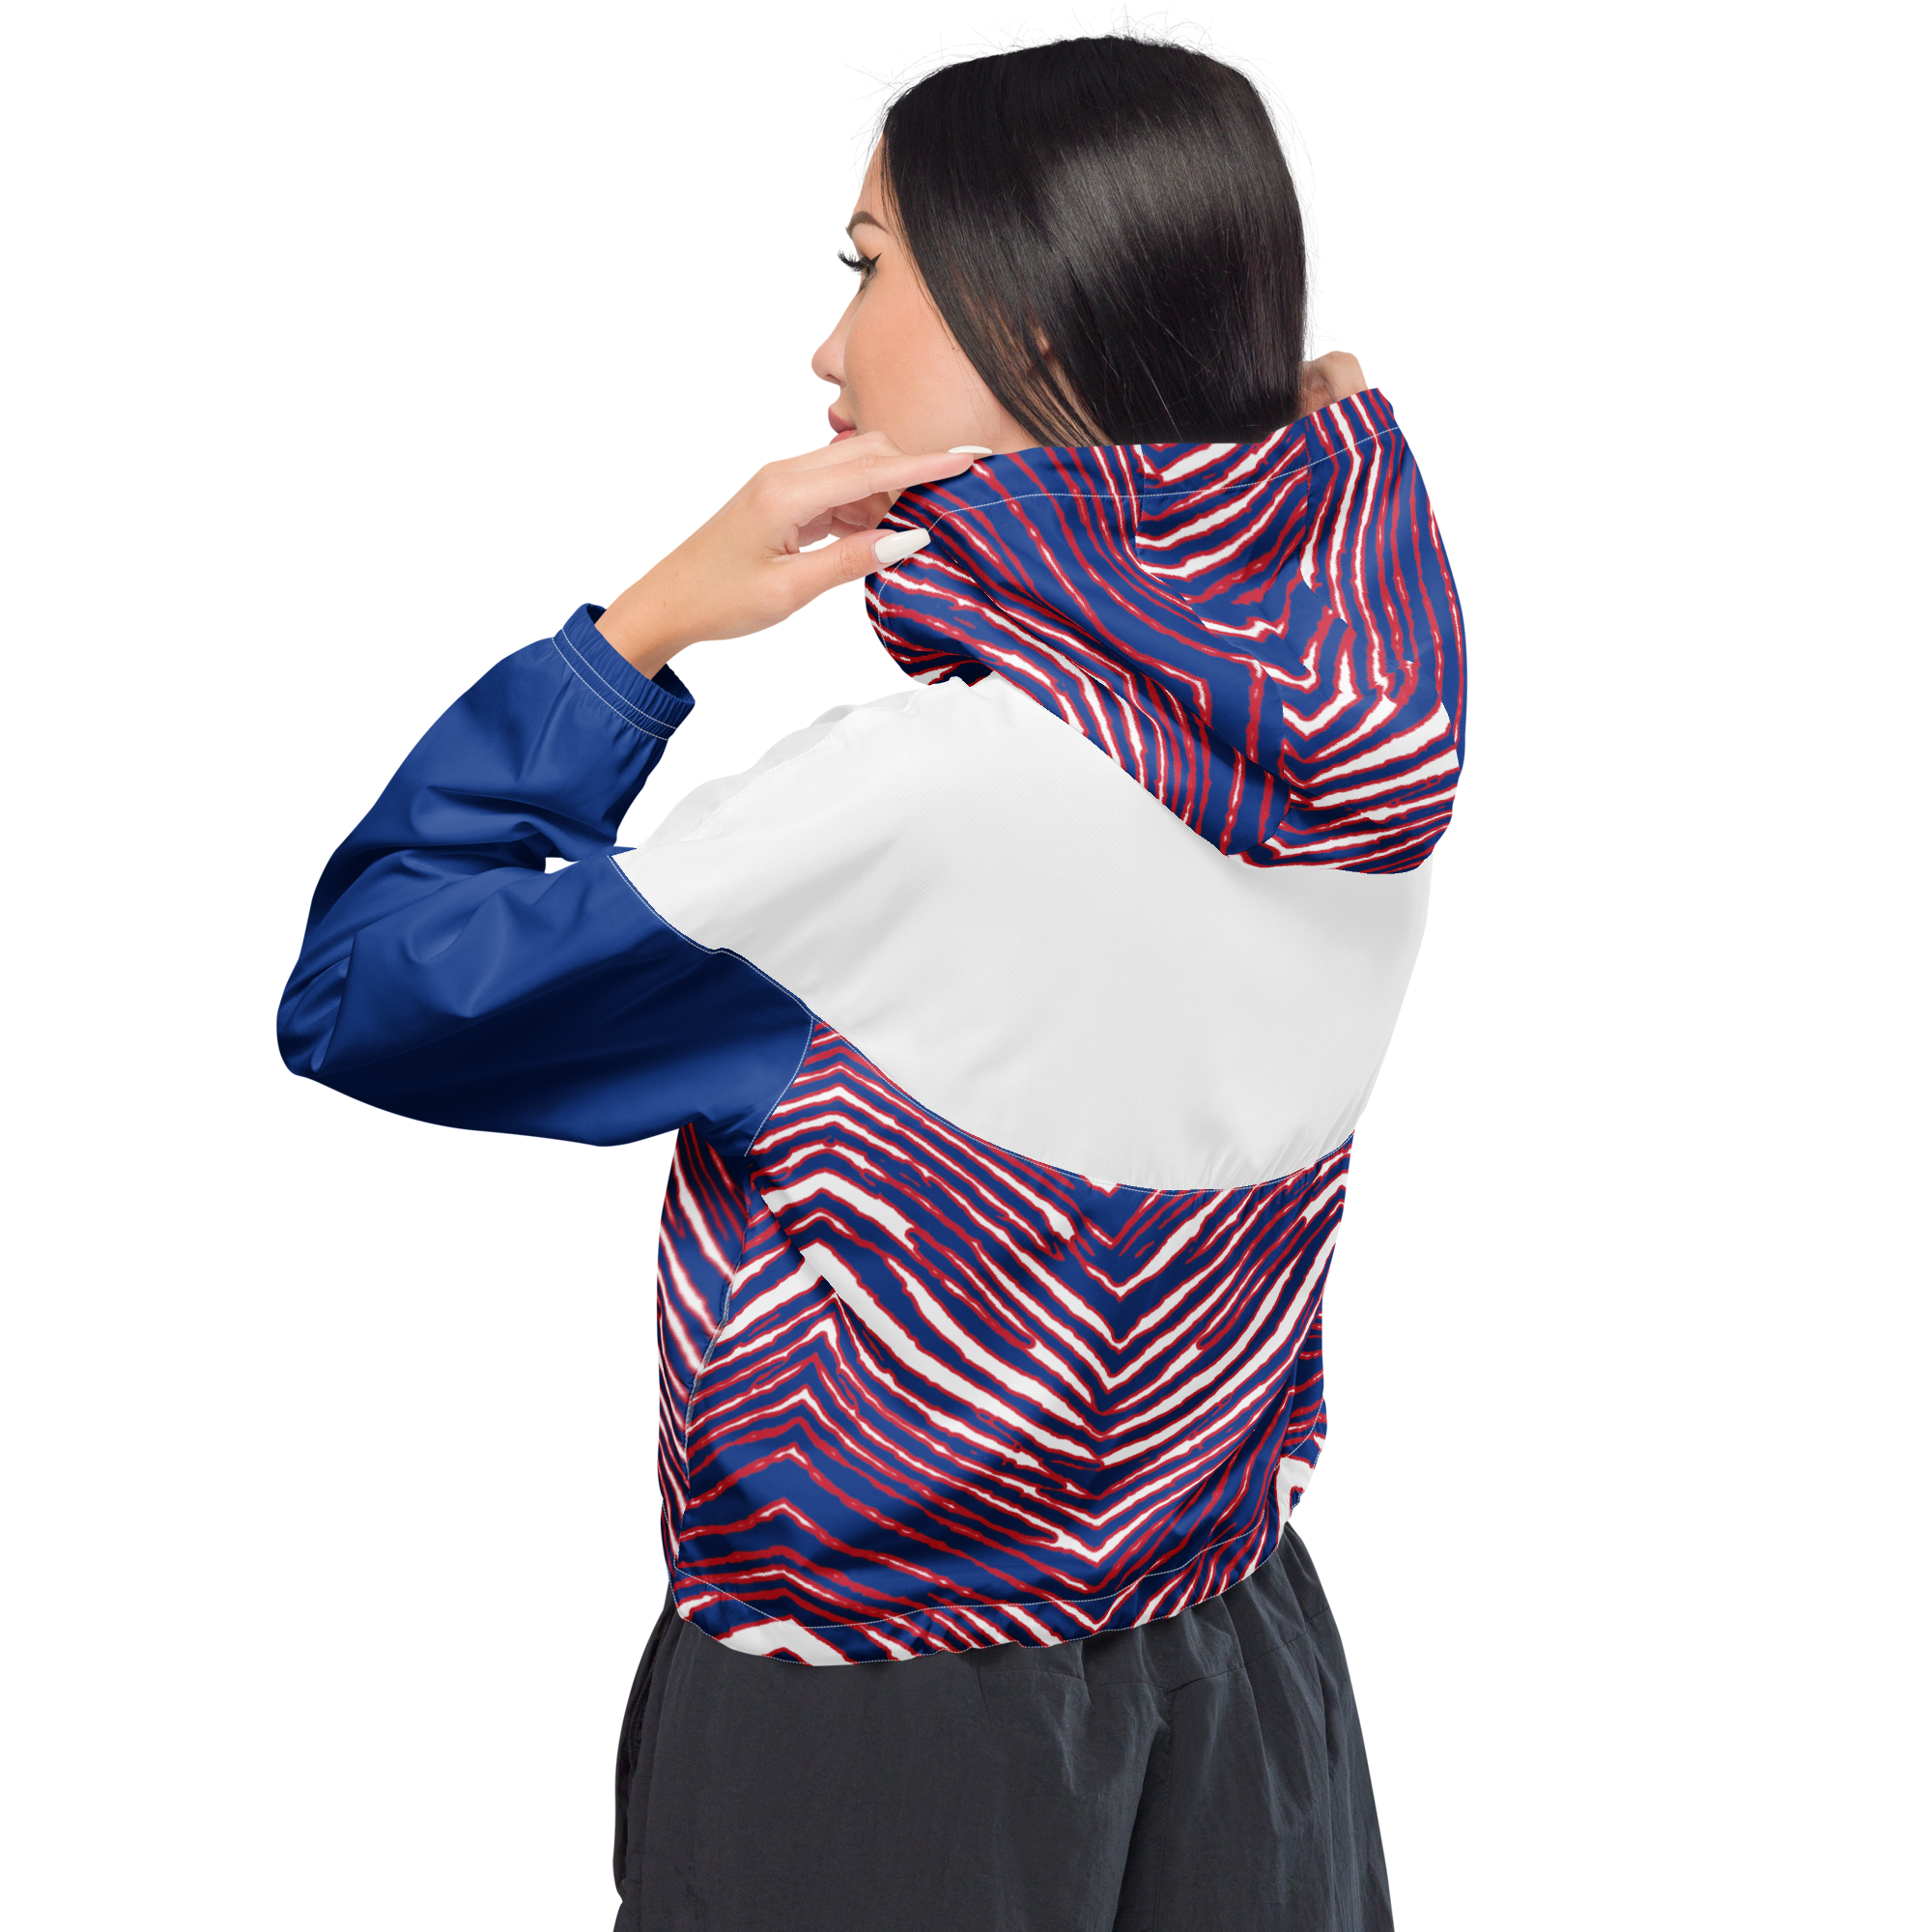 MAFIA GEAR Zubaz Women's Cropped Windbreaker – 26 Shirts